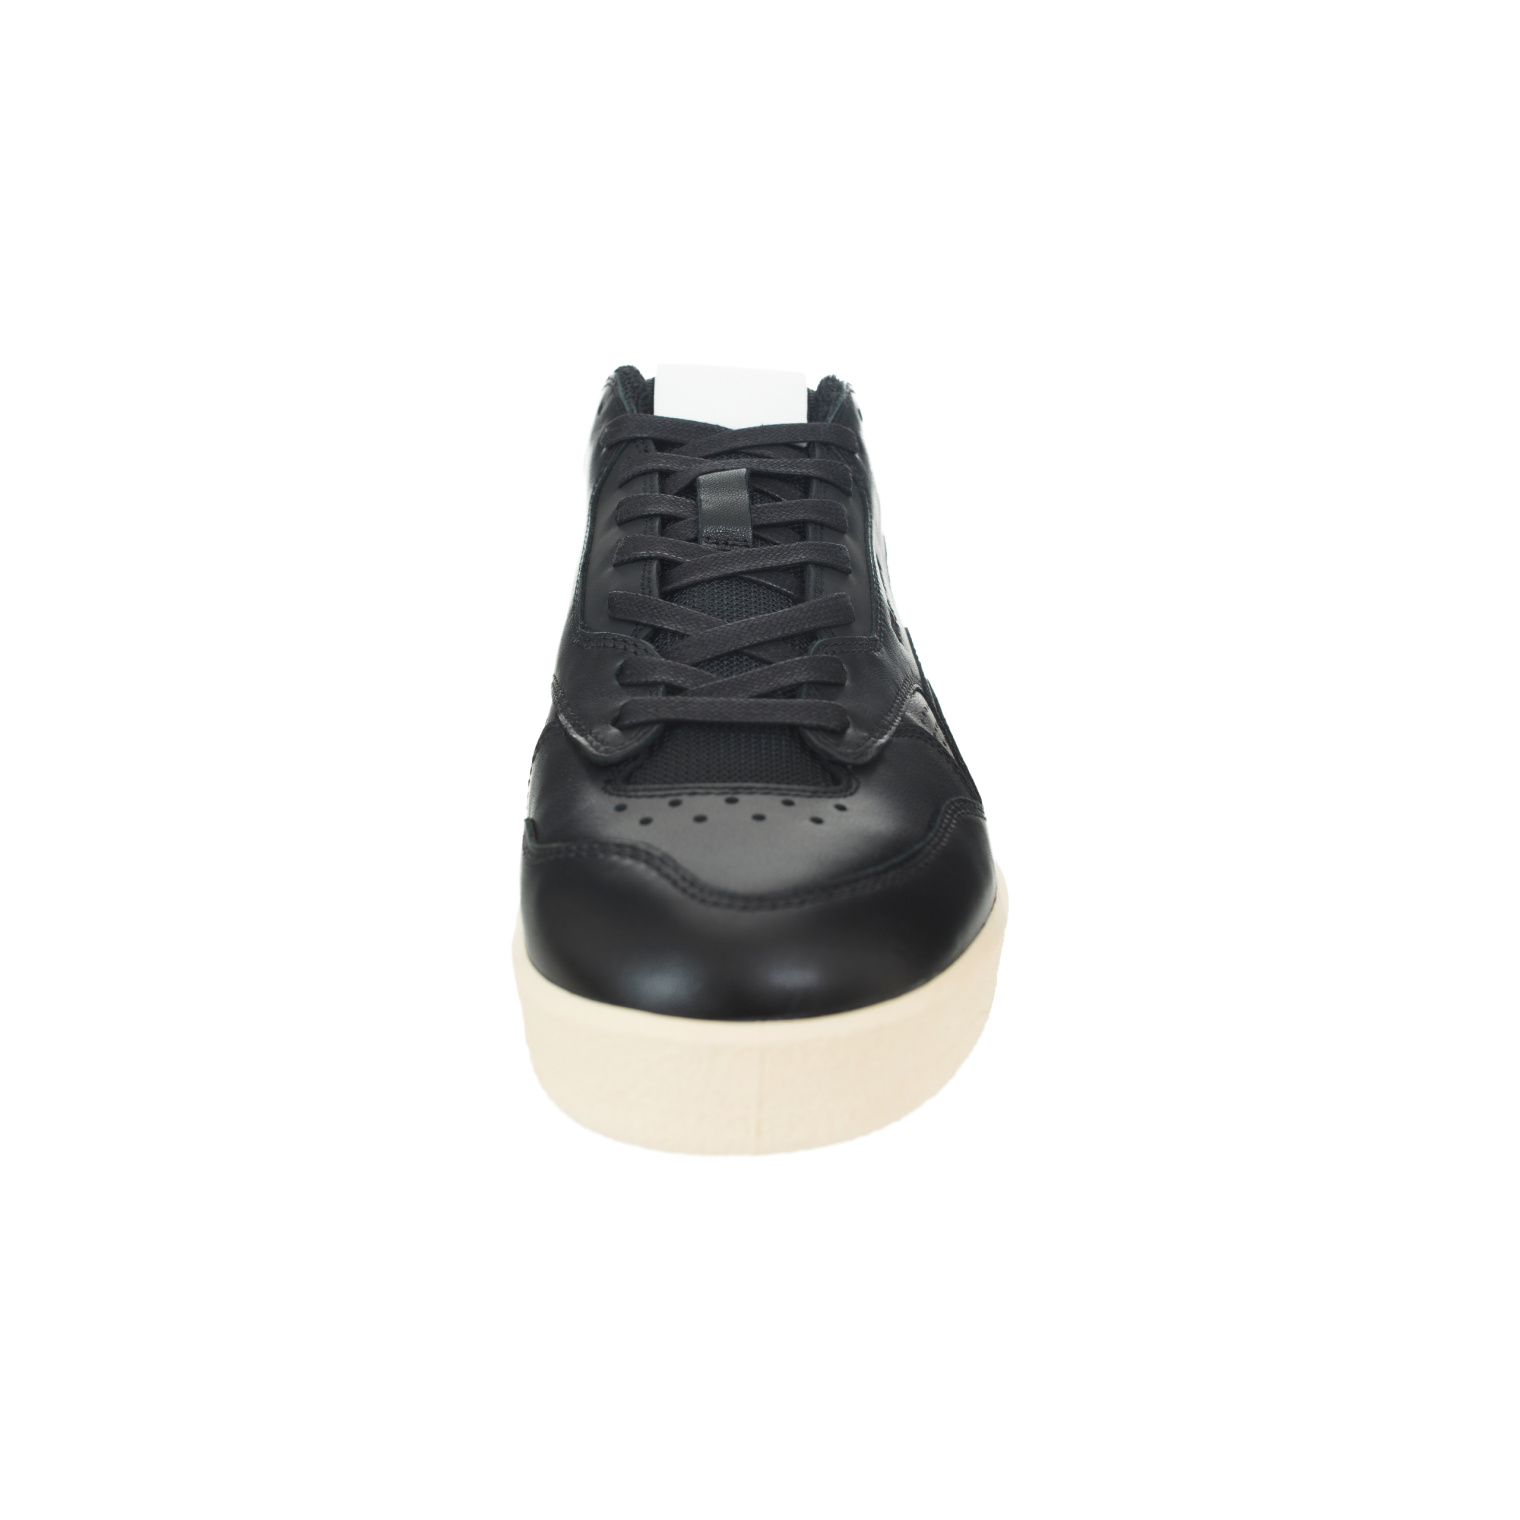 Jil Sander Black leather sneakers